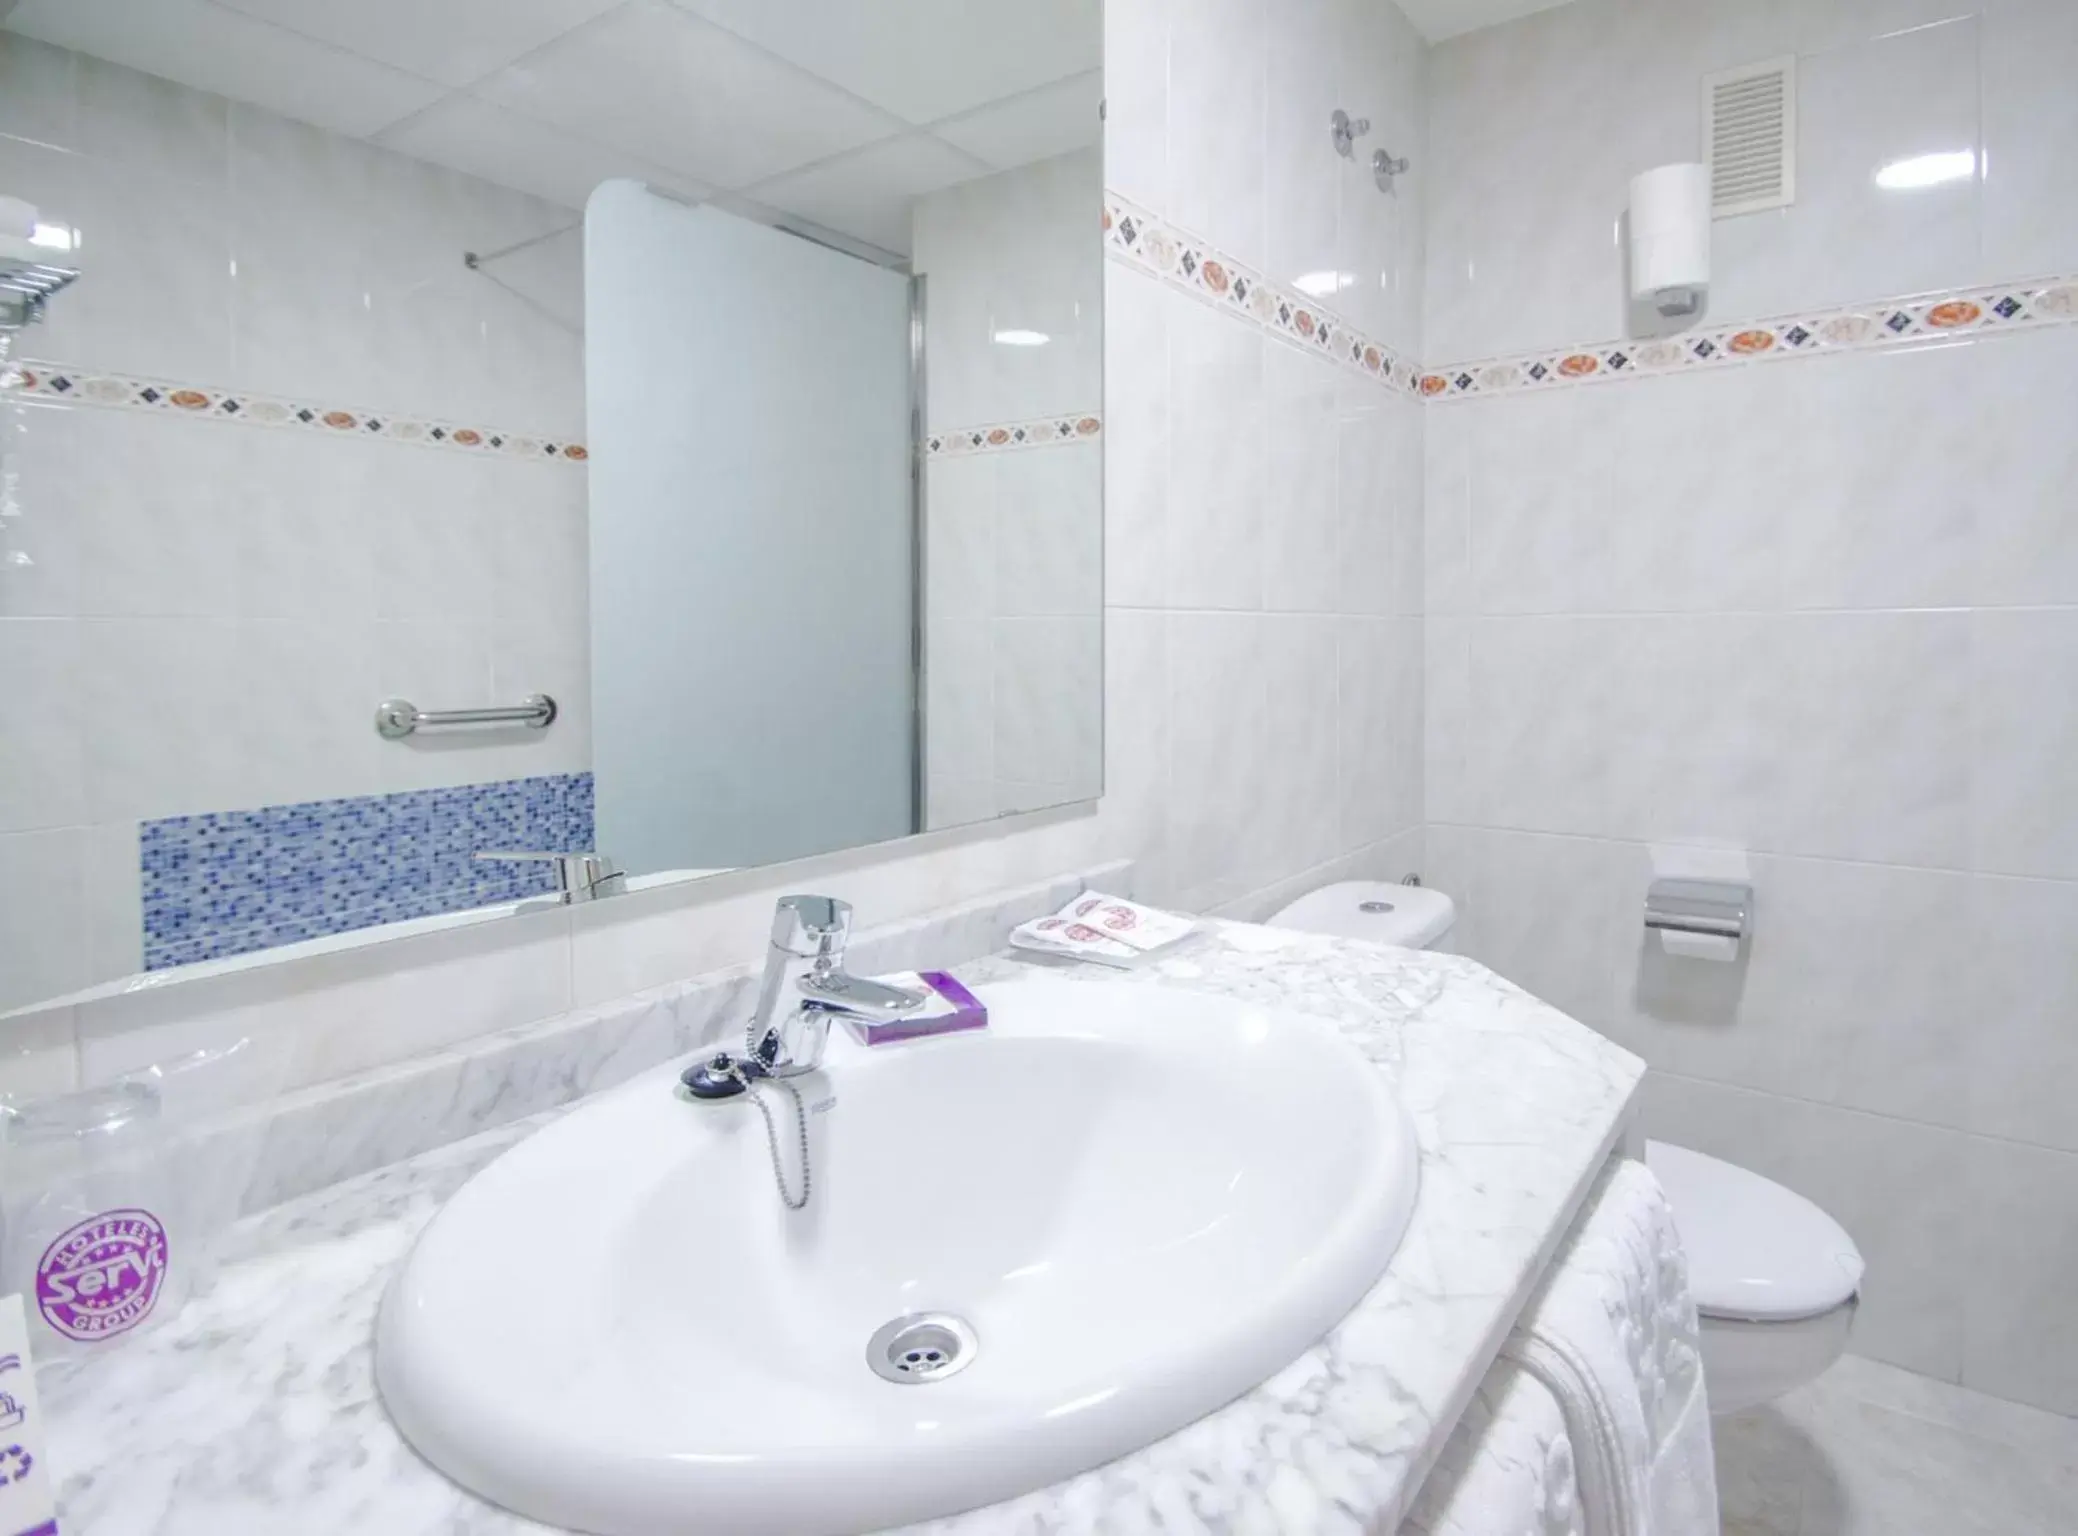 Bathroom in Hotel Servigroup Rialto